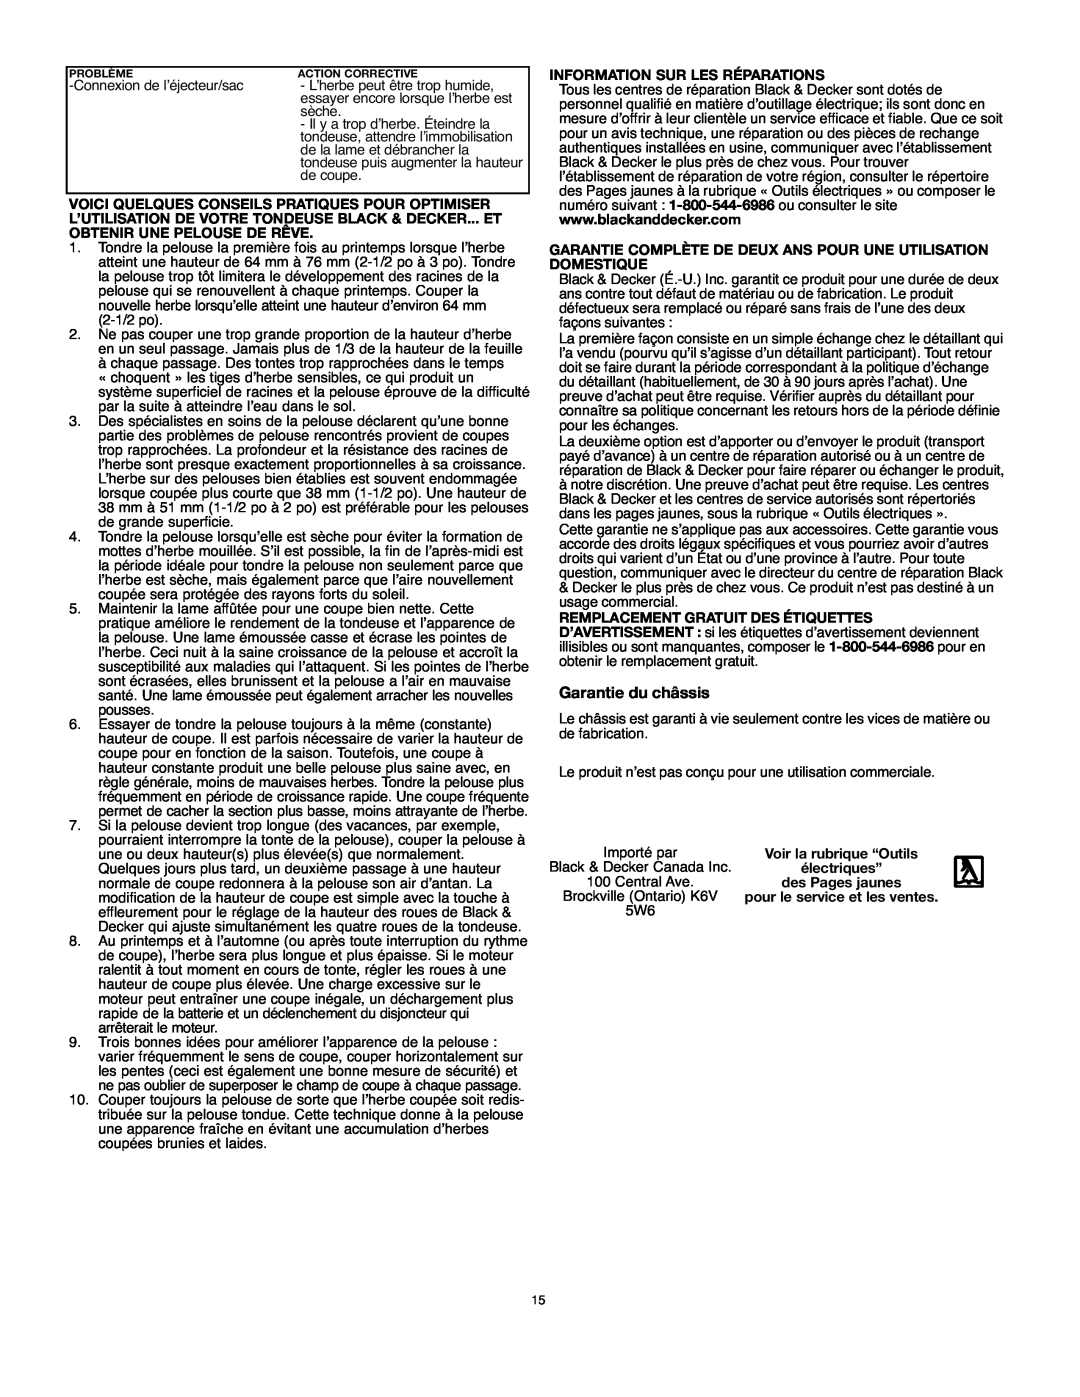 Black & Decker MM575 instruction manual Garantie du châssis, Information Sur Les Réparations 